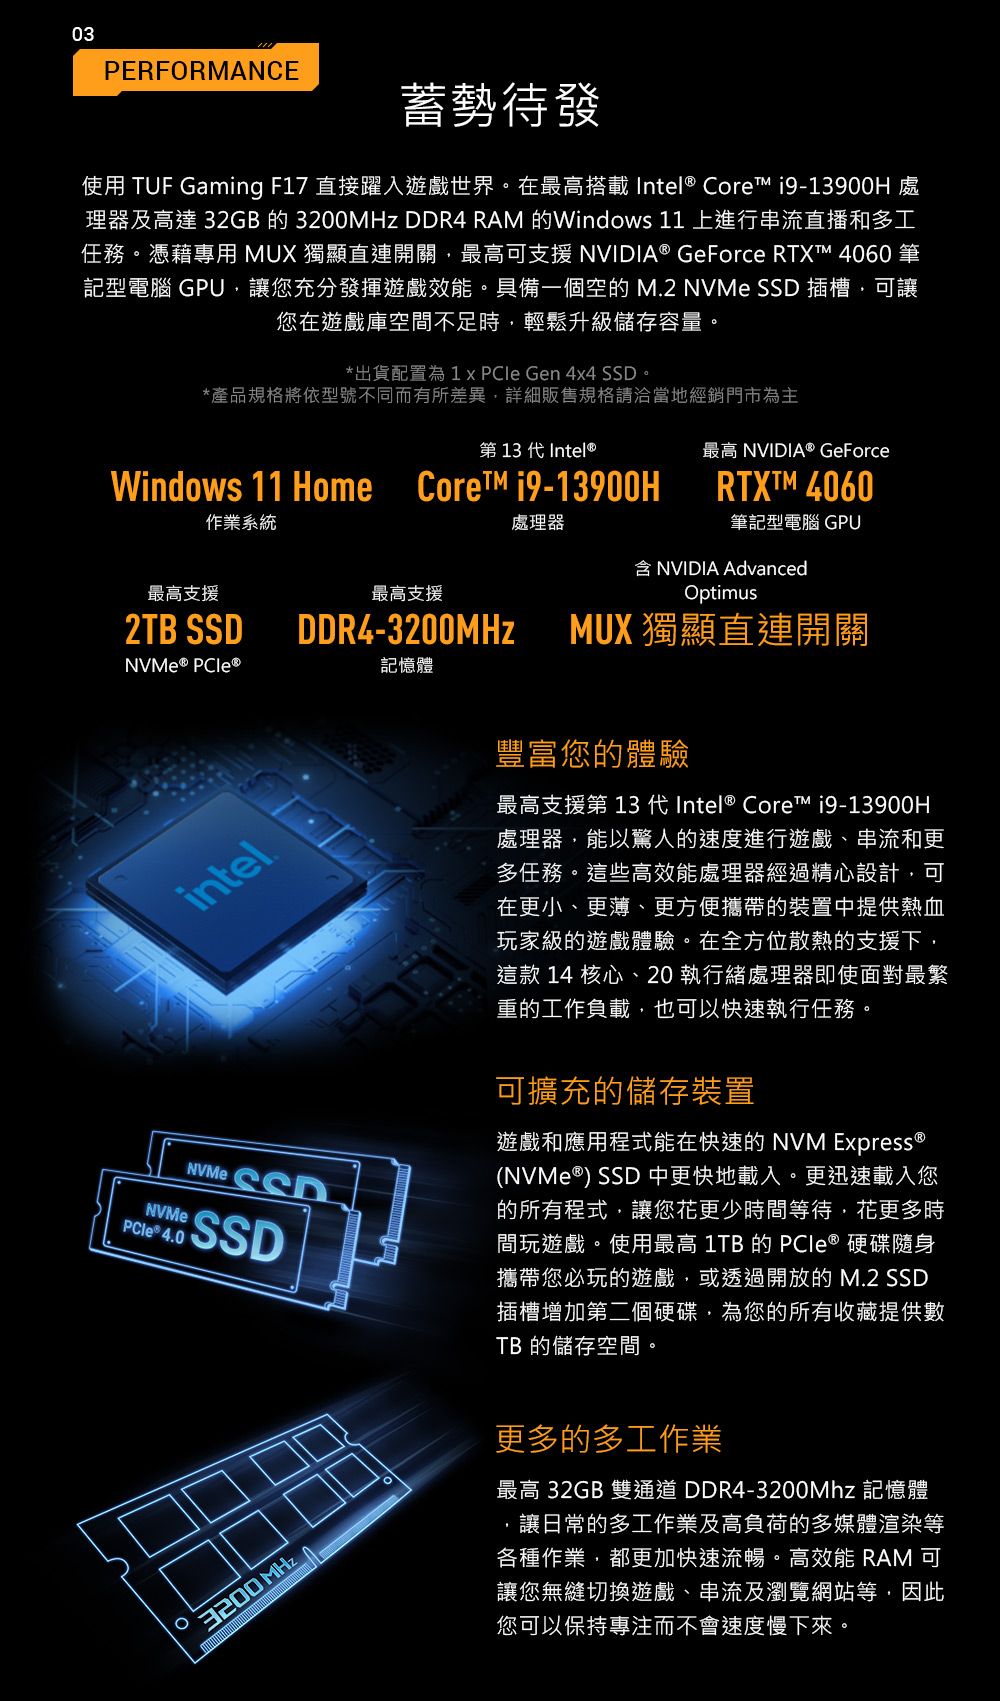 03PERFORMANCE蓄勢待發使用 TUF Gaming F7 直接躍入遊戲世界。在最高搭載 Intel Core  處理器及高達 32GB 的 MHz  RAM 的Windows 11 上進行串流直播和多工任務。憑藉專用 MUX 獨顯直連開關最高可支援 NVIDIA® GeForce RTXT™ 4060 筆記型電腦 GPU讓您充分發揮遊戲效能。具備一個空的 M2 NVMe  插槽可讓您在遊戲庫空間不足時,輕鬆升級儲存容量。*出貨配置為 1   Gen 4x4 SSD。*產品規格將依型號不同而有所差異,詳細販售規格請洽當地經銷門市為主第 13 代Intel®Windows 11 Home  作業系統處理器最高 NVIDIA® GeForceRTXTM 4060筆記型電腦 GPUNVIDIA Advanced最高支援最高支援2TB SSDDDR4-3200MHz 記憶體intelNVMe 4.0NVMe SSDSSDOptimusMUX 獨顯直連開關豐富您的體驗最高支援第 13 代Intel® Core™ i9-13900H處理器,能以驚人的速度進行遊戲、串流和更多任務。這些高效能處理器經過精心設計,可在更小、更薄、更方便攜帶的裝置中提供熱血玩家級的遊戲體驗。在全方位散熱的支援下,這款 14 核心、20執行處理器即使面對最繁重的工作負載,也可以快速執行任務。可擴充的儲存裝置遊戲和應用程式能在快速的 NVM Express ®(NVMe®) SSD 中更快地載入。更迅速載入您的所有程式,讓您更少時間等待·花更多時間玩遊戲。使用最高 1TB 的 PCIe ® 硬碟隨身攜帶您必玩的遊戲,或透過開放的 M.2 SSD插槽增加第二個硬碟,為您的所有收藏提供數TB 的儲存空間。3200 MHz更多的多工作業最高 32GB 雙通道DDR4-3200Mhz 記憶體.讓日常的多工作業及高負荷的多媒體渲染等各種作業,都更加快速流暢。高效能 RAM 可讓您無縫切換遊戲、串流及瀏覽網站等,因此您可以保持專注而不會速度慢下來。